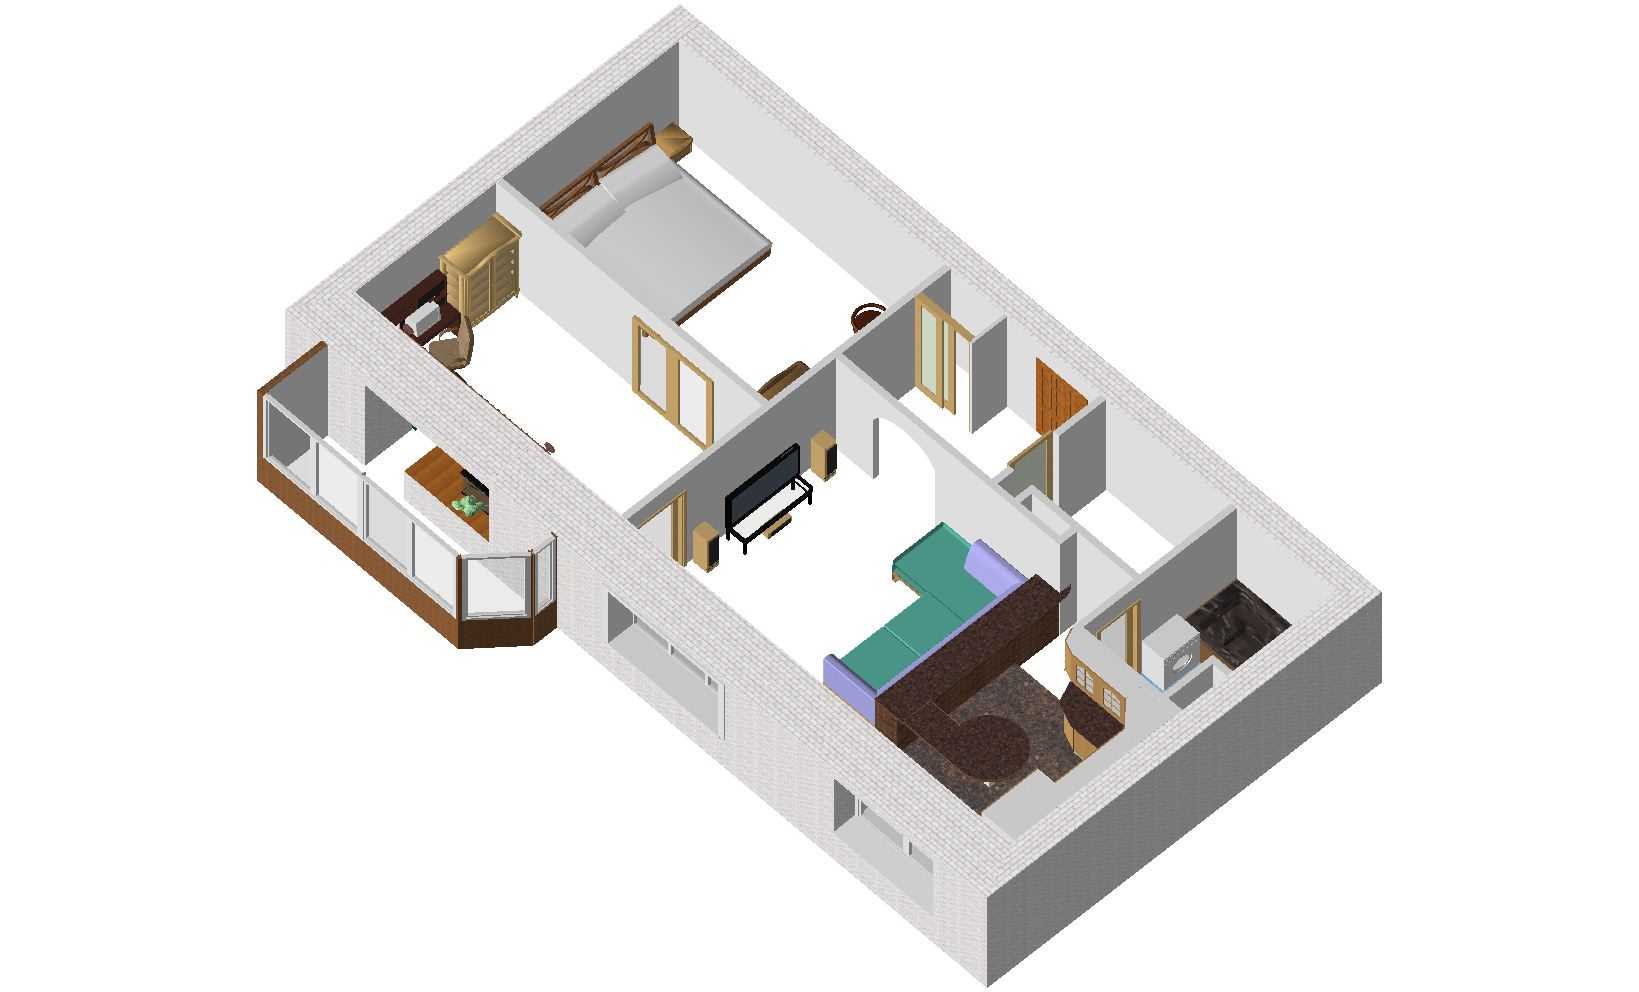 Перепланировка двухкомнатной квартиры  особенности и основные способы в трехкомнатную, объединение комнат и создание проемов Варианты для разных видов домов Примеры перепланировки для семьи с ребенком и из трехкомнатной квартиры в двухкомнатную